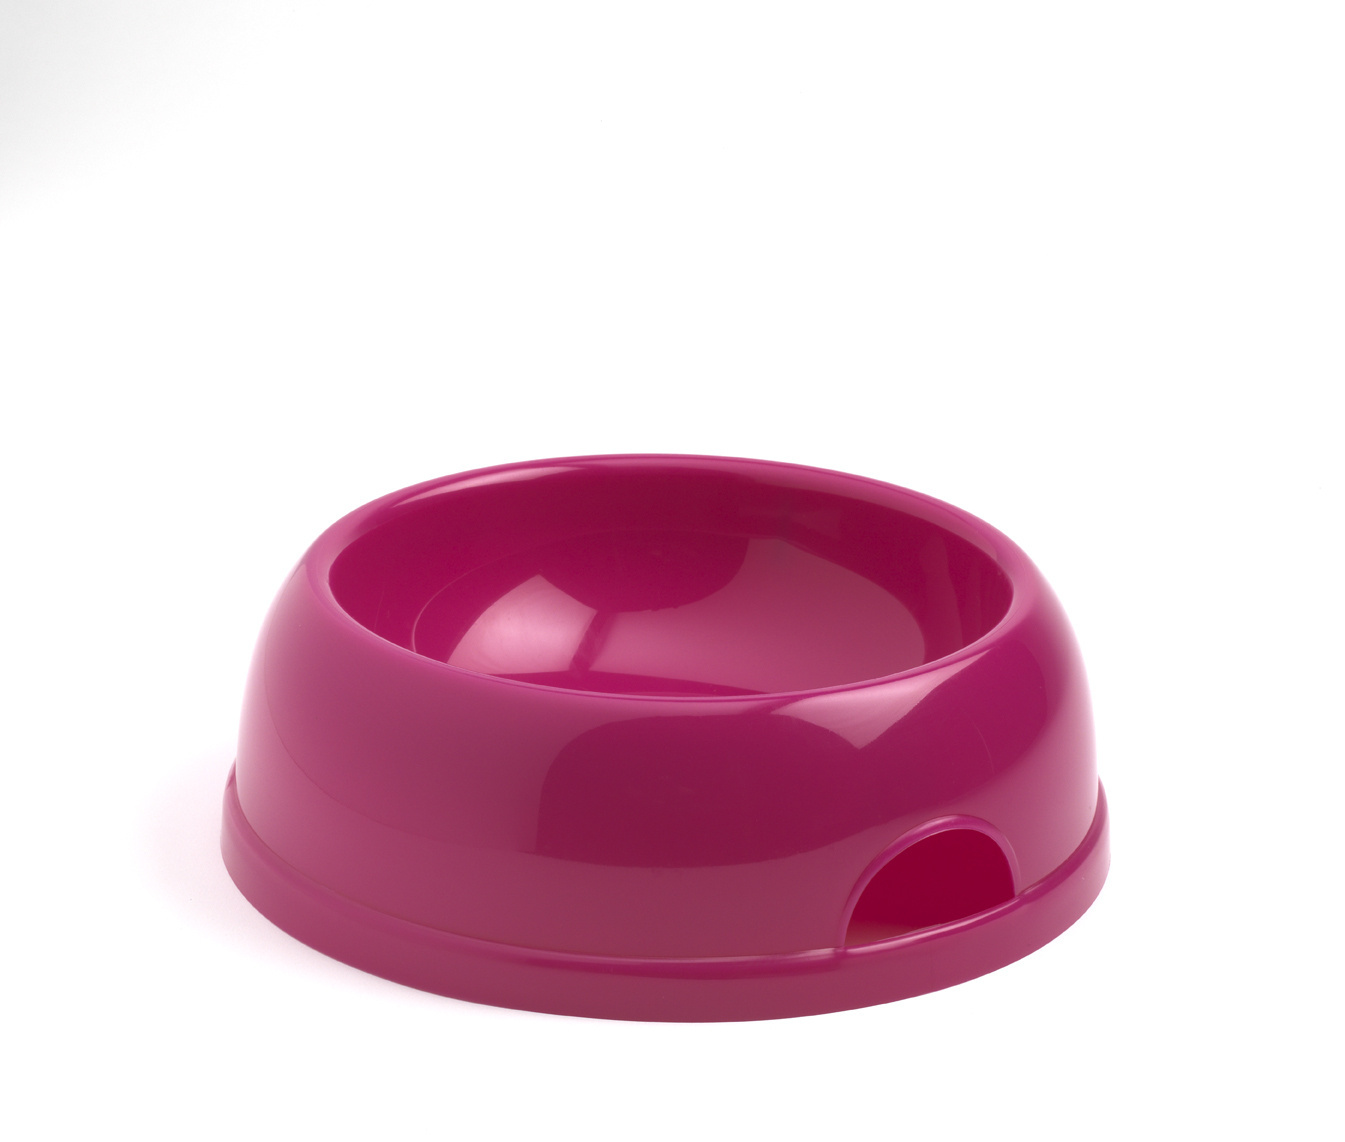 Moderna Moderna миска пластиковая Eco, ярко-розовый (1450 мл) moderna moderna миска пластиковая gusto теплый серый 700мл